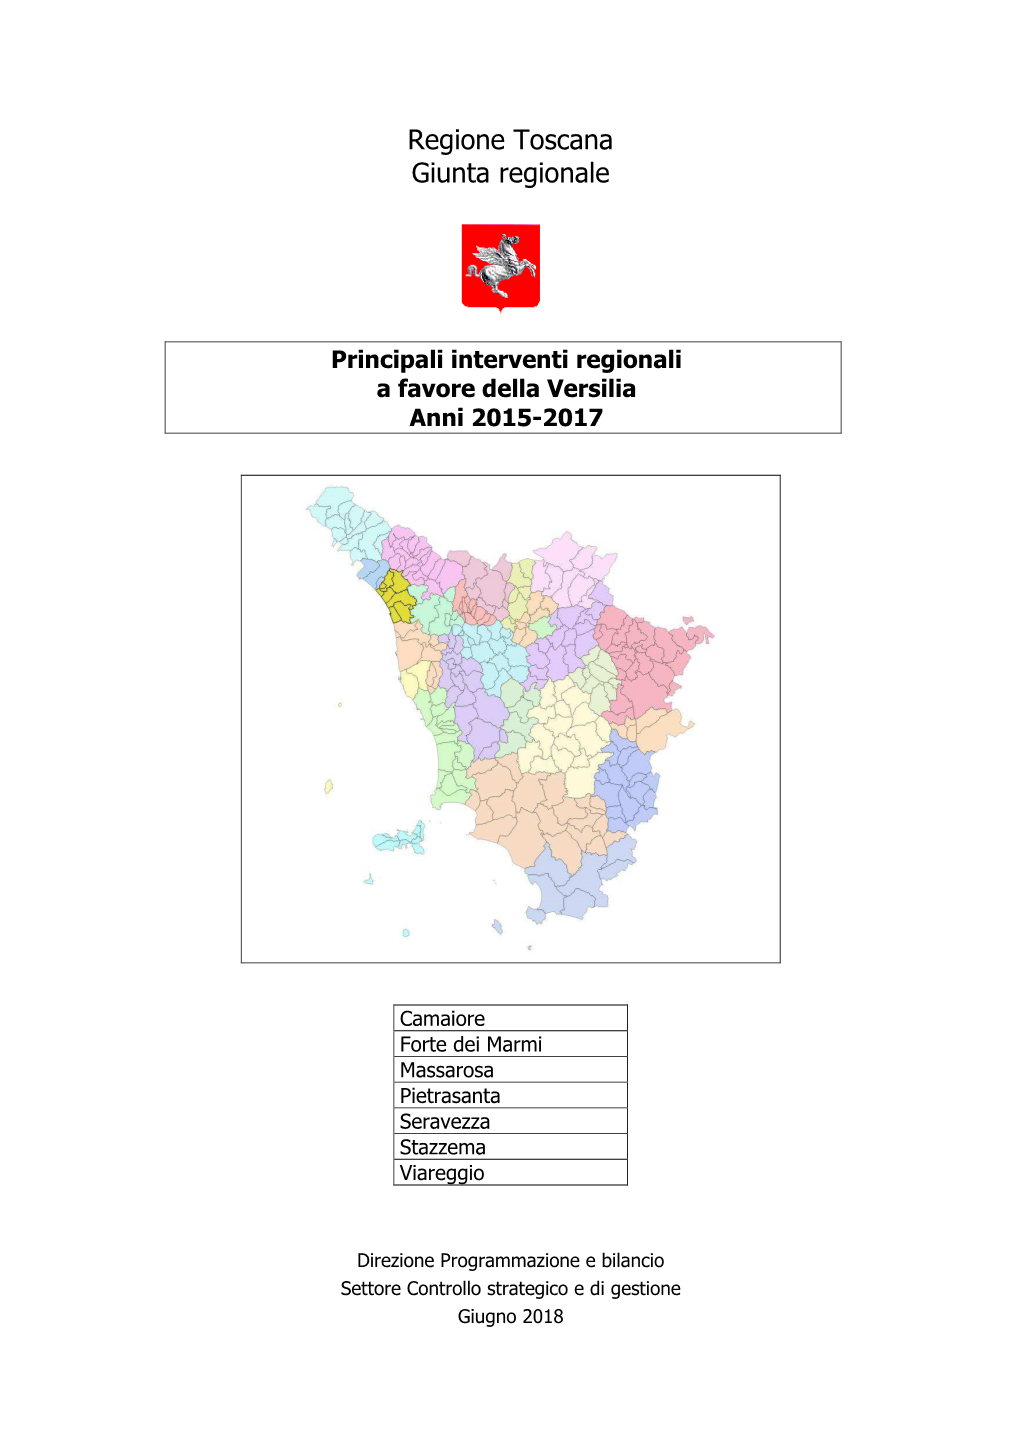 Principali Interventi Regionali a Favore Della Versilia Anni 2015-2017